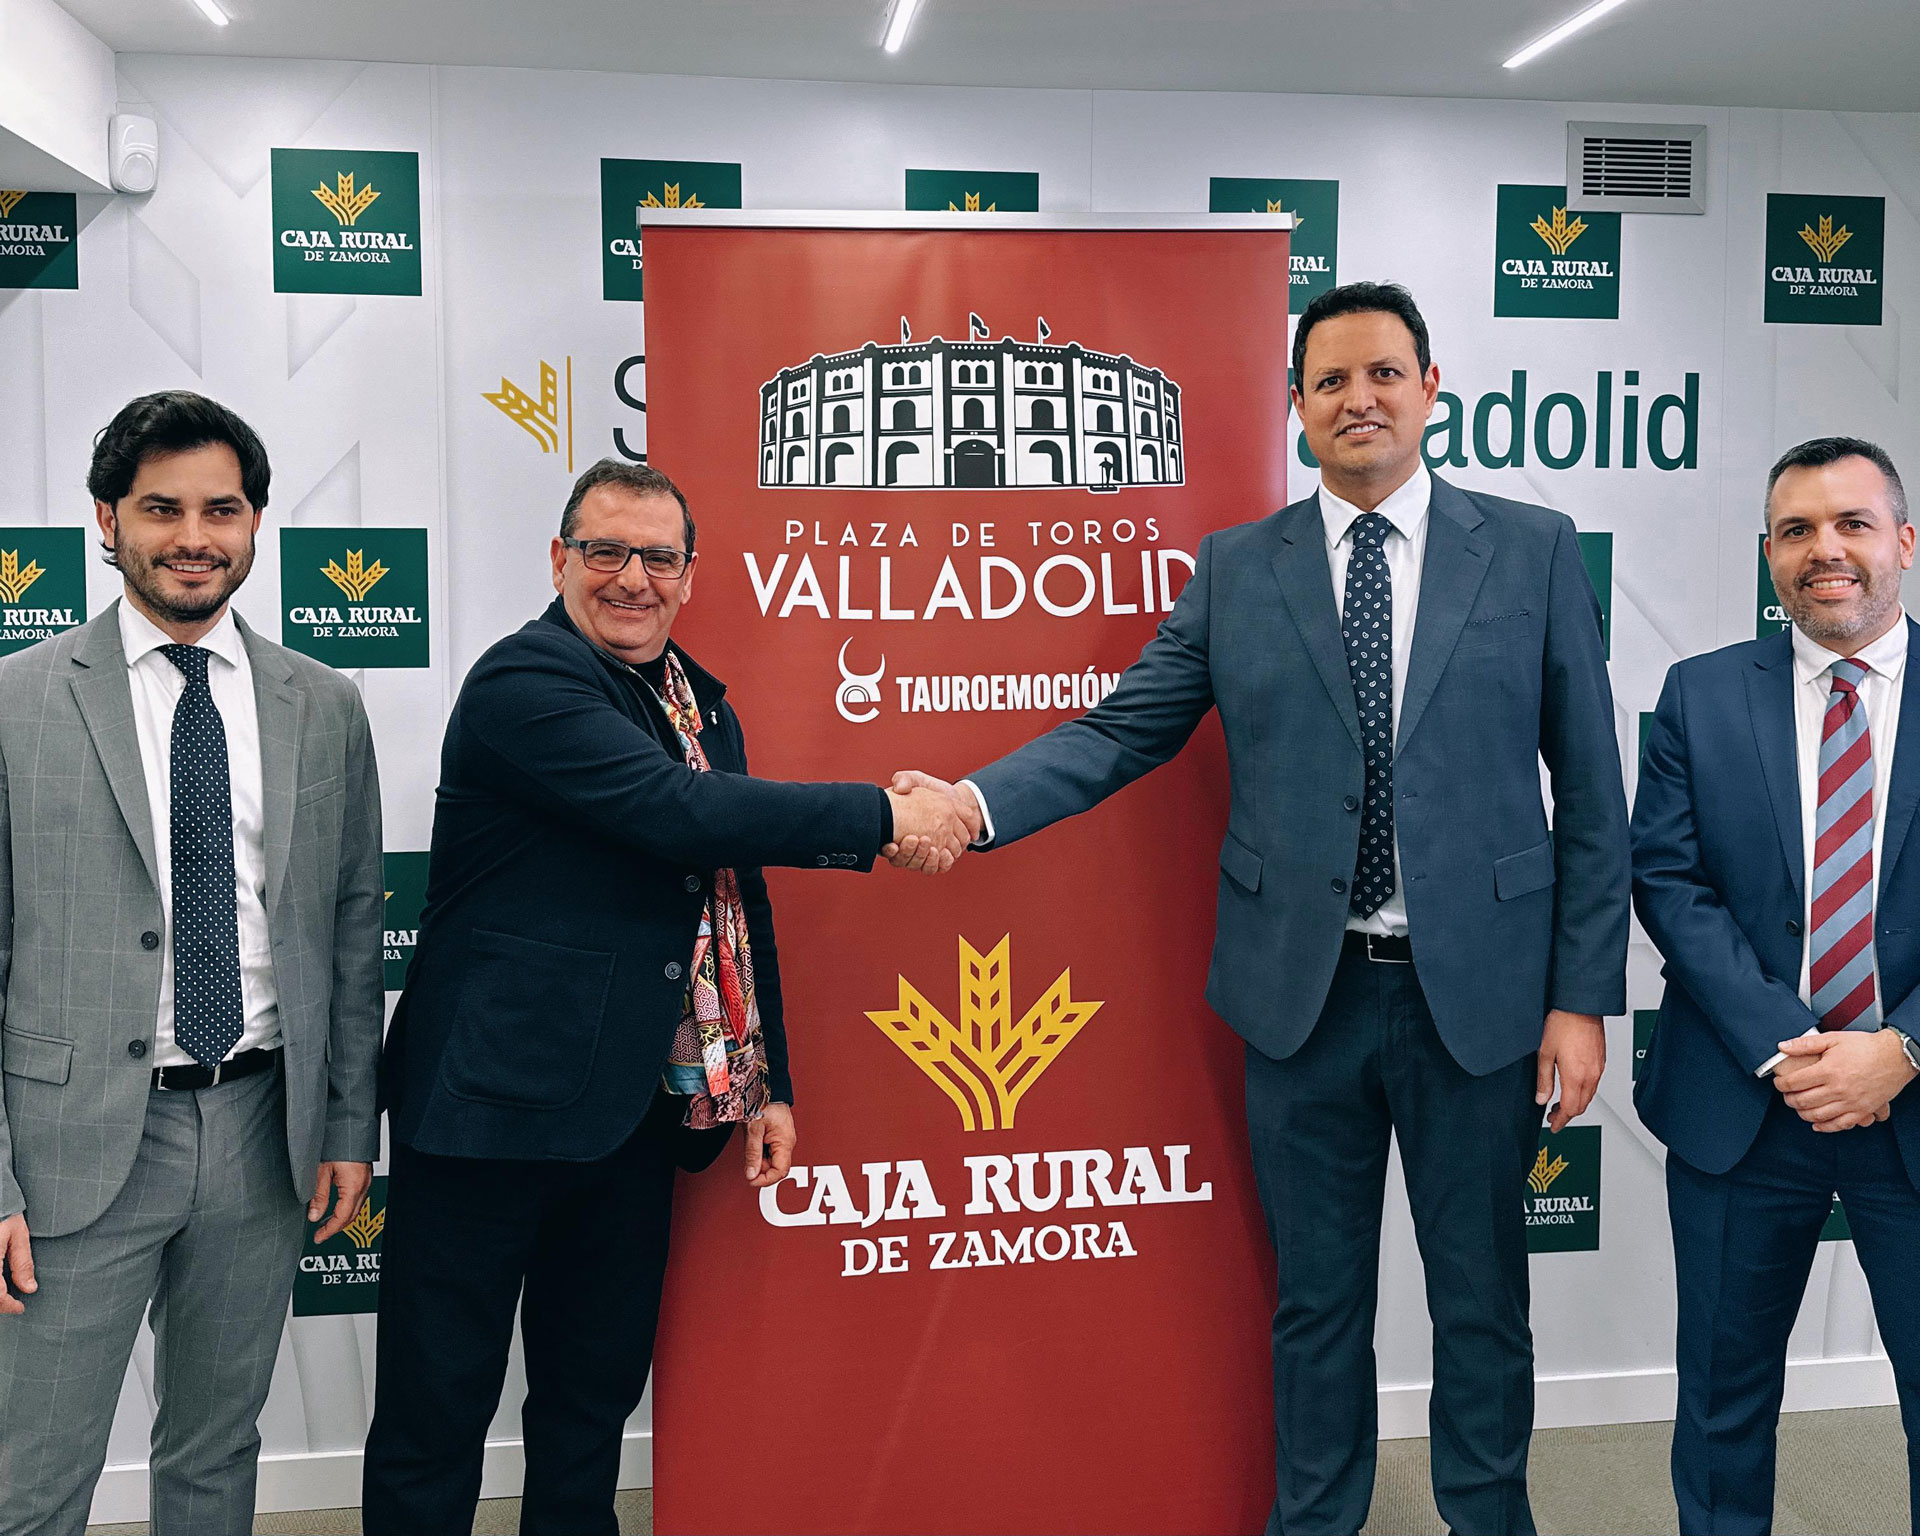 Caja Rural renueva su acuerdo con Tauroemoción, para impulsar la plaza de toros de Valladolid 